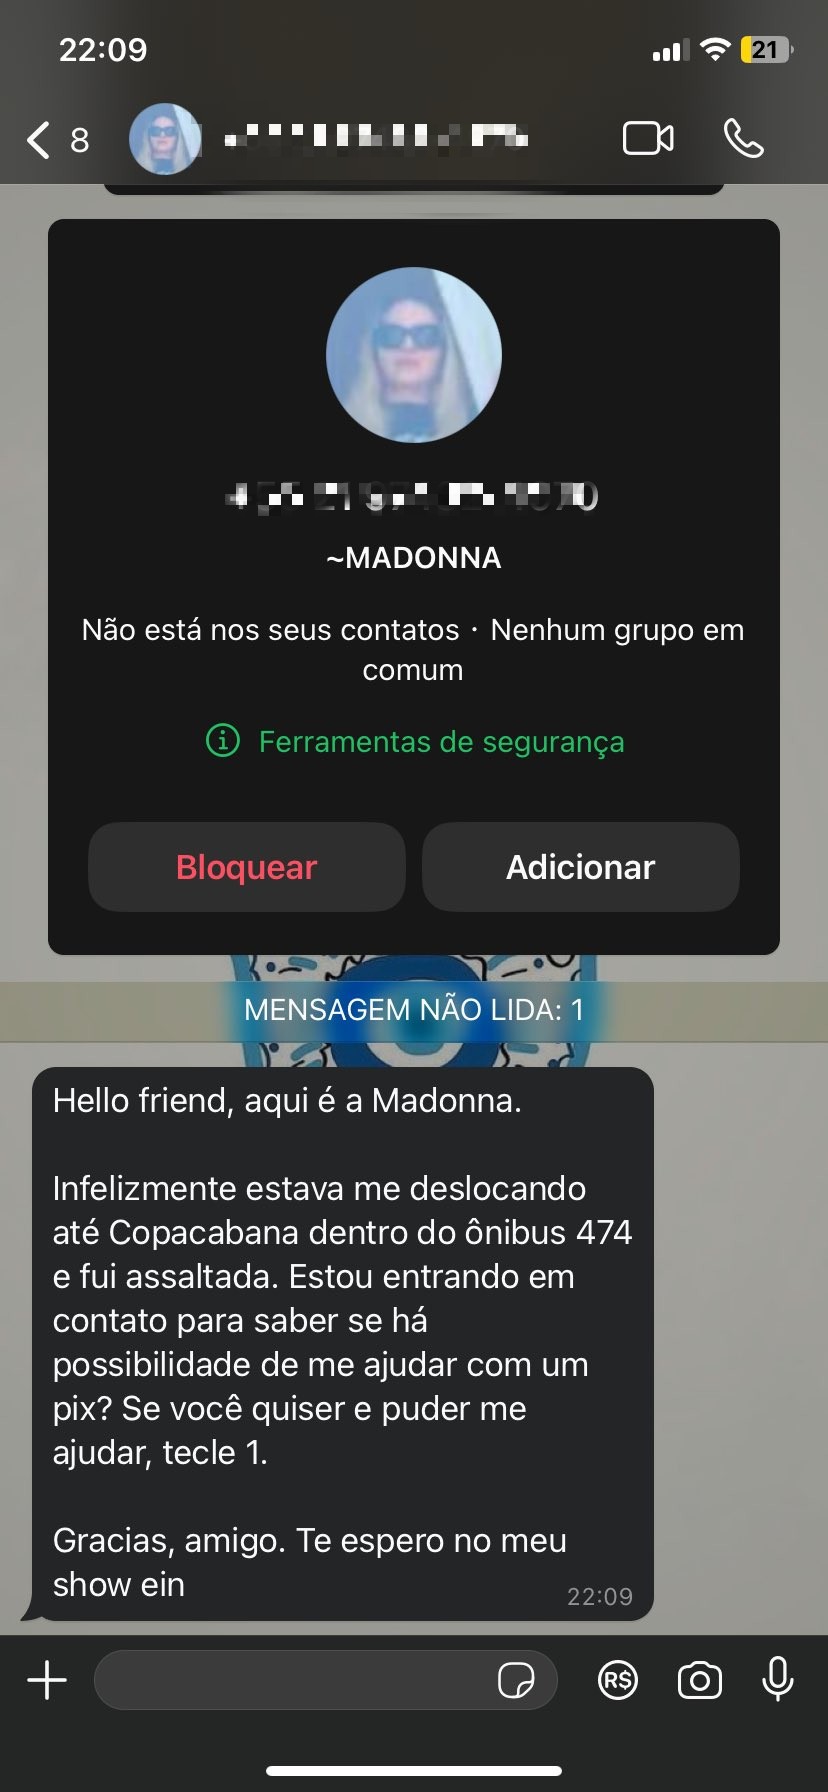 Falso print de Madonna assaltada e pedindo PIX no Rio viraliza; 'estava me deslocando até Copacabana dentro do ônibus', diz mensagem